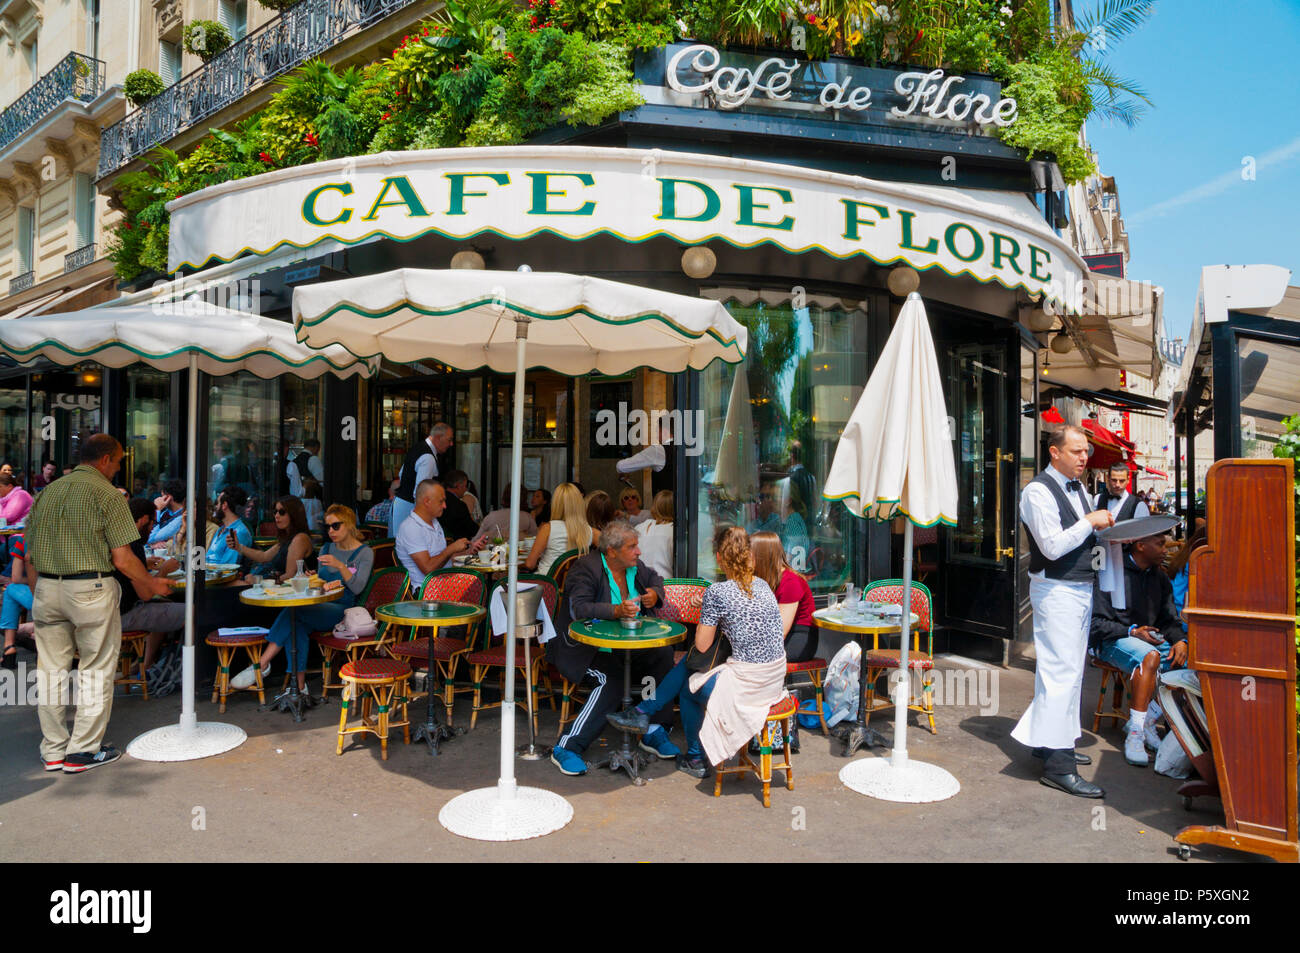 Cafe de Flore, St Germain des Pres, Left Bank, Paris, France Stock Photo